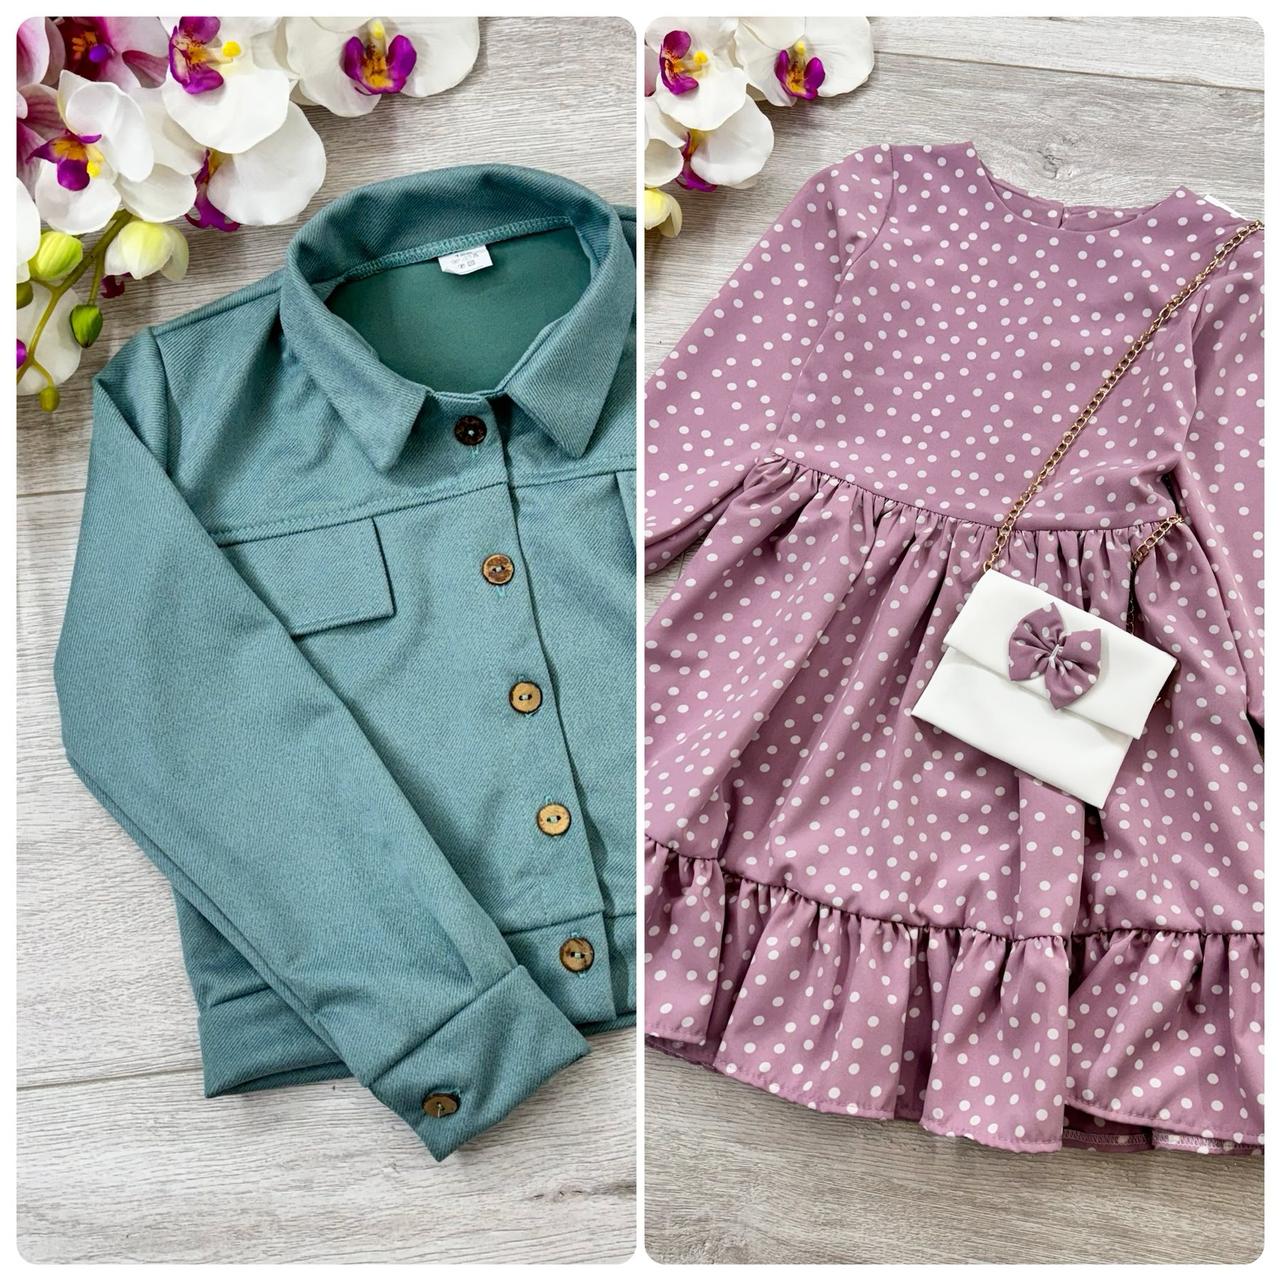 Дитяча весняна сукня з сумочкою та жакет із вельвета зелено - бузкового кольору